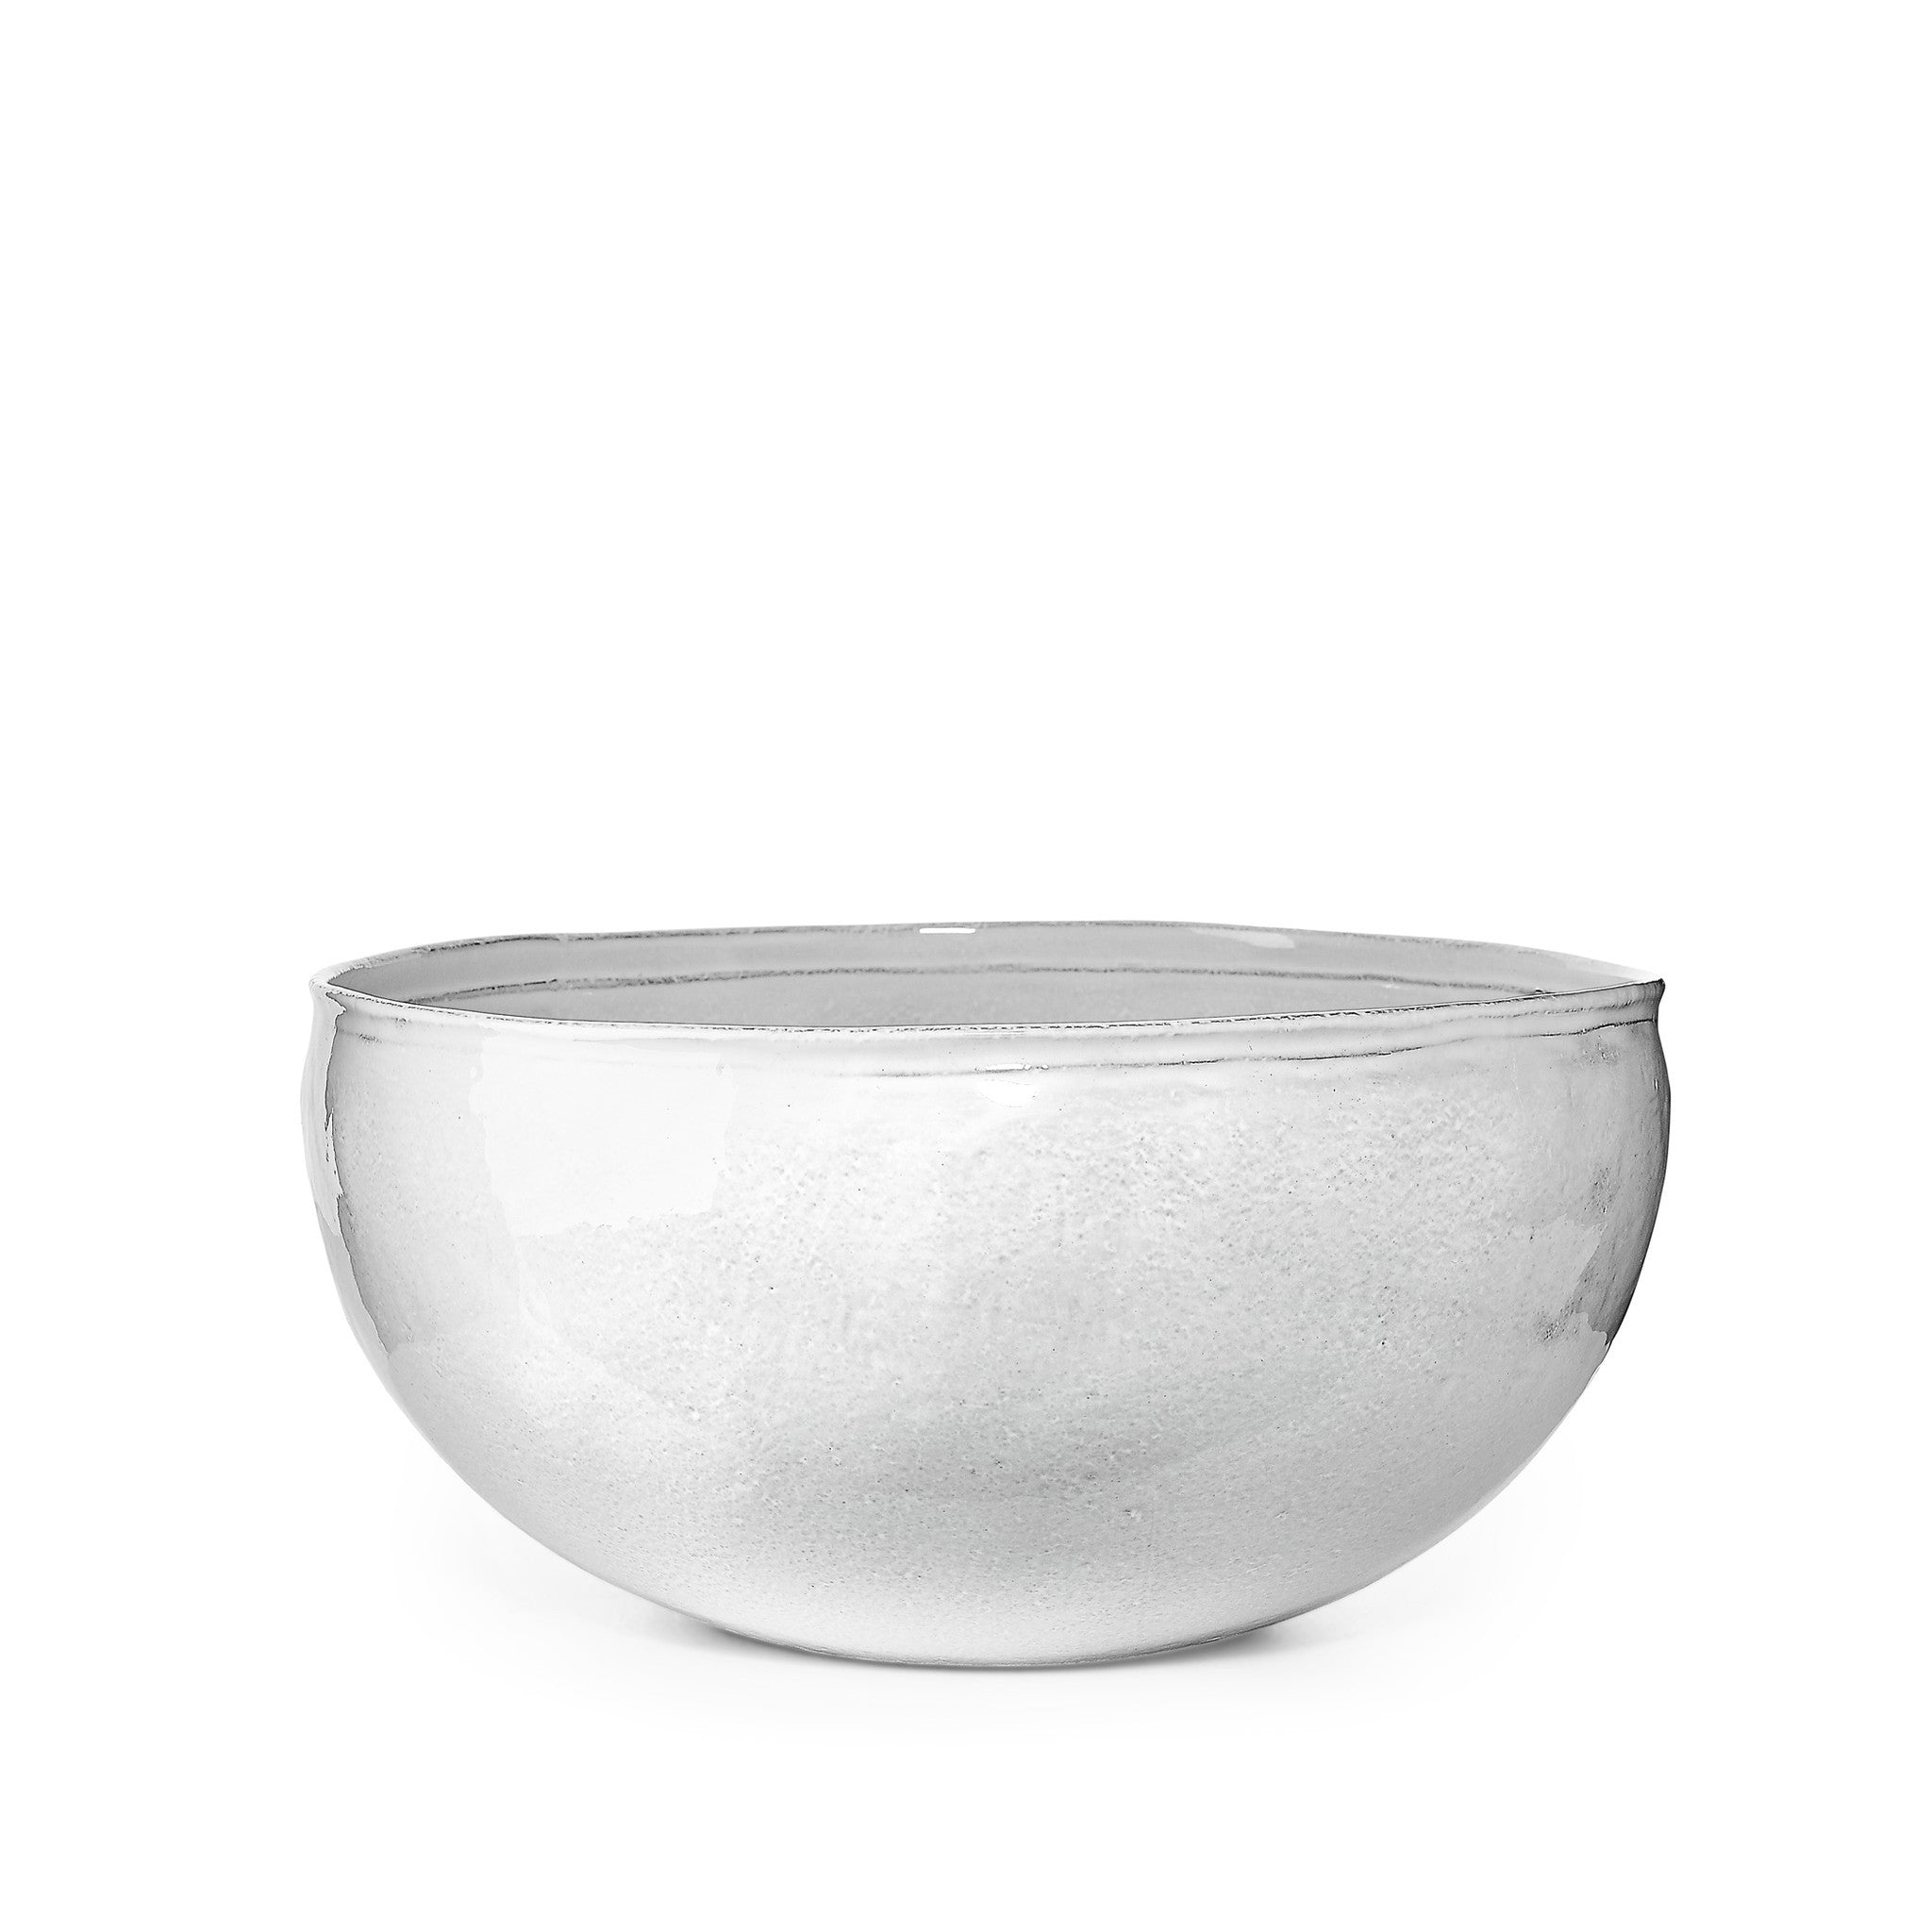 Simple Salad Bowl, Large by Astier de Villatte, 29cm